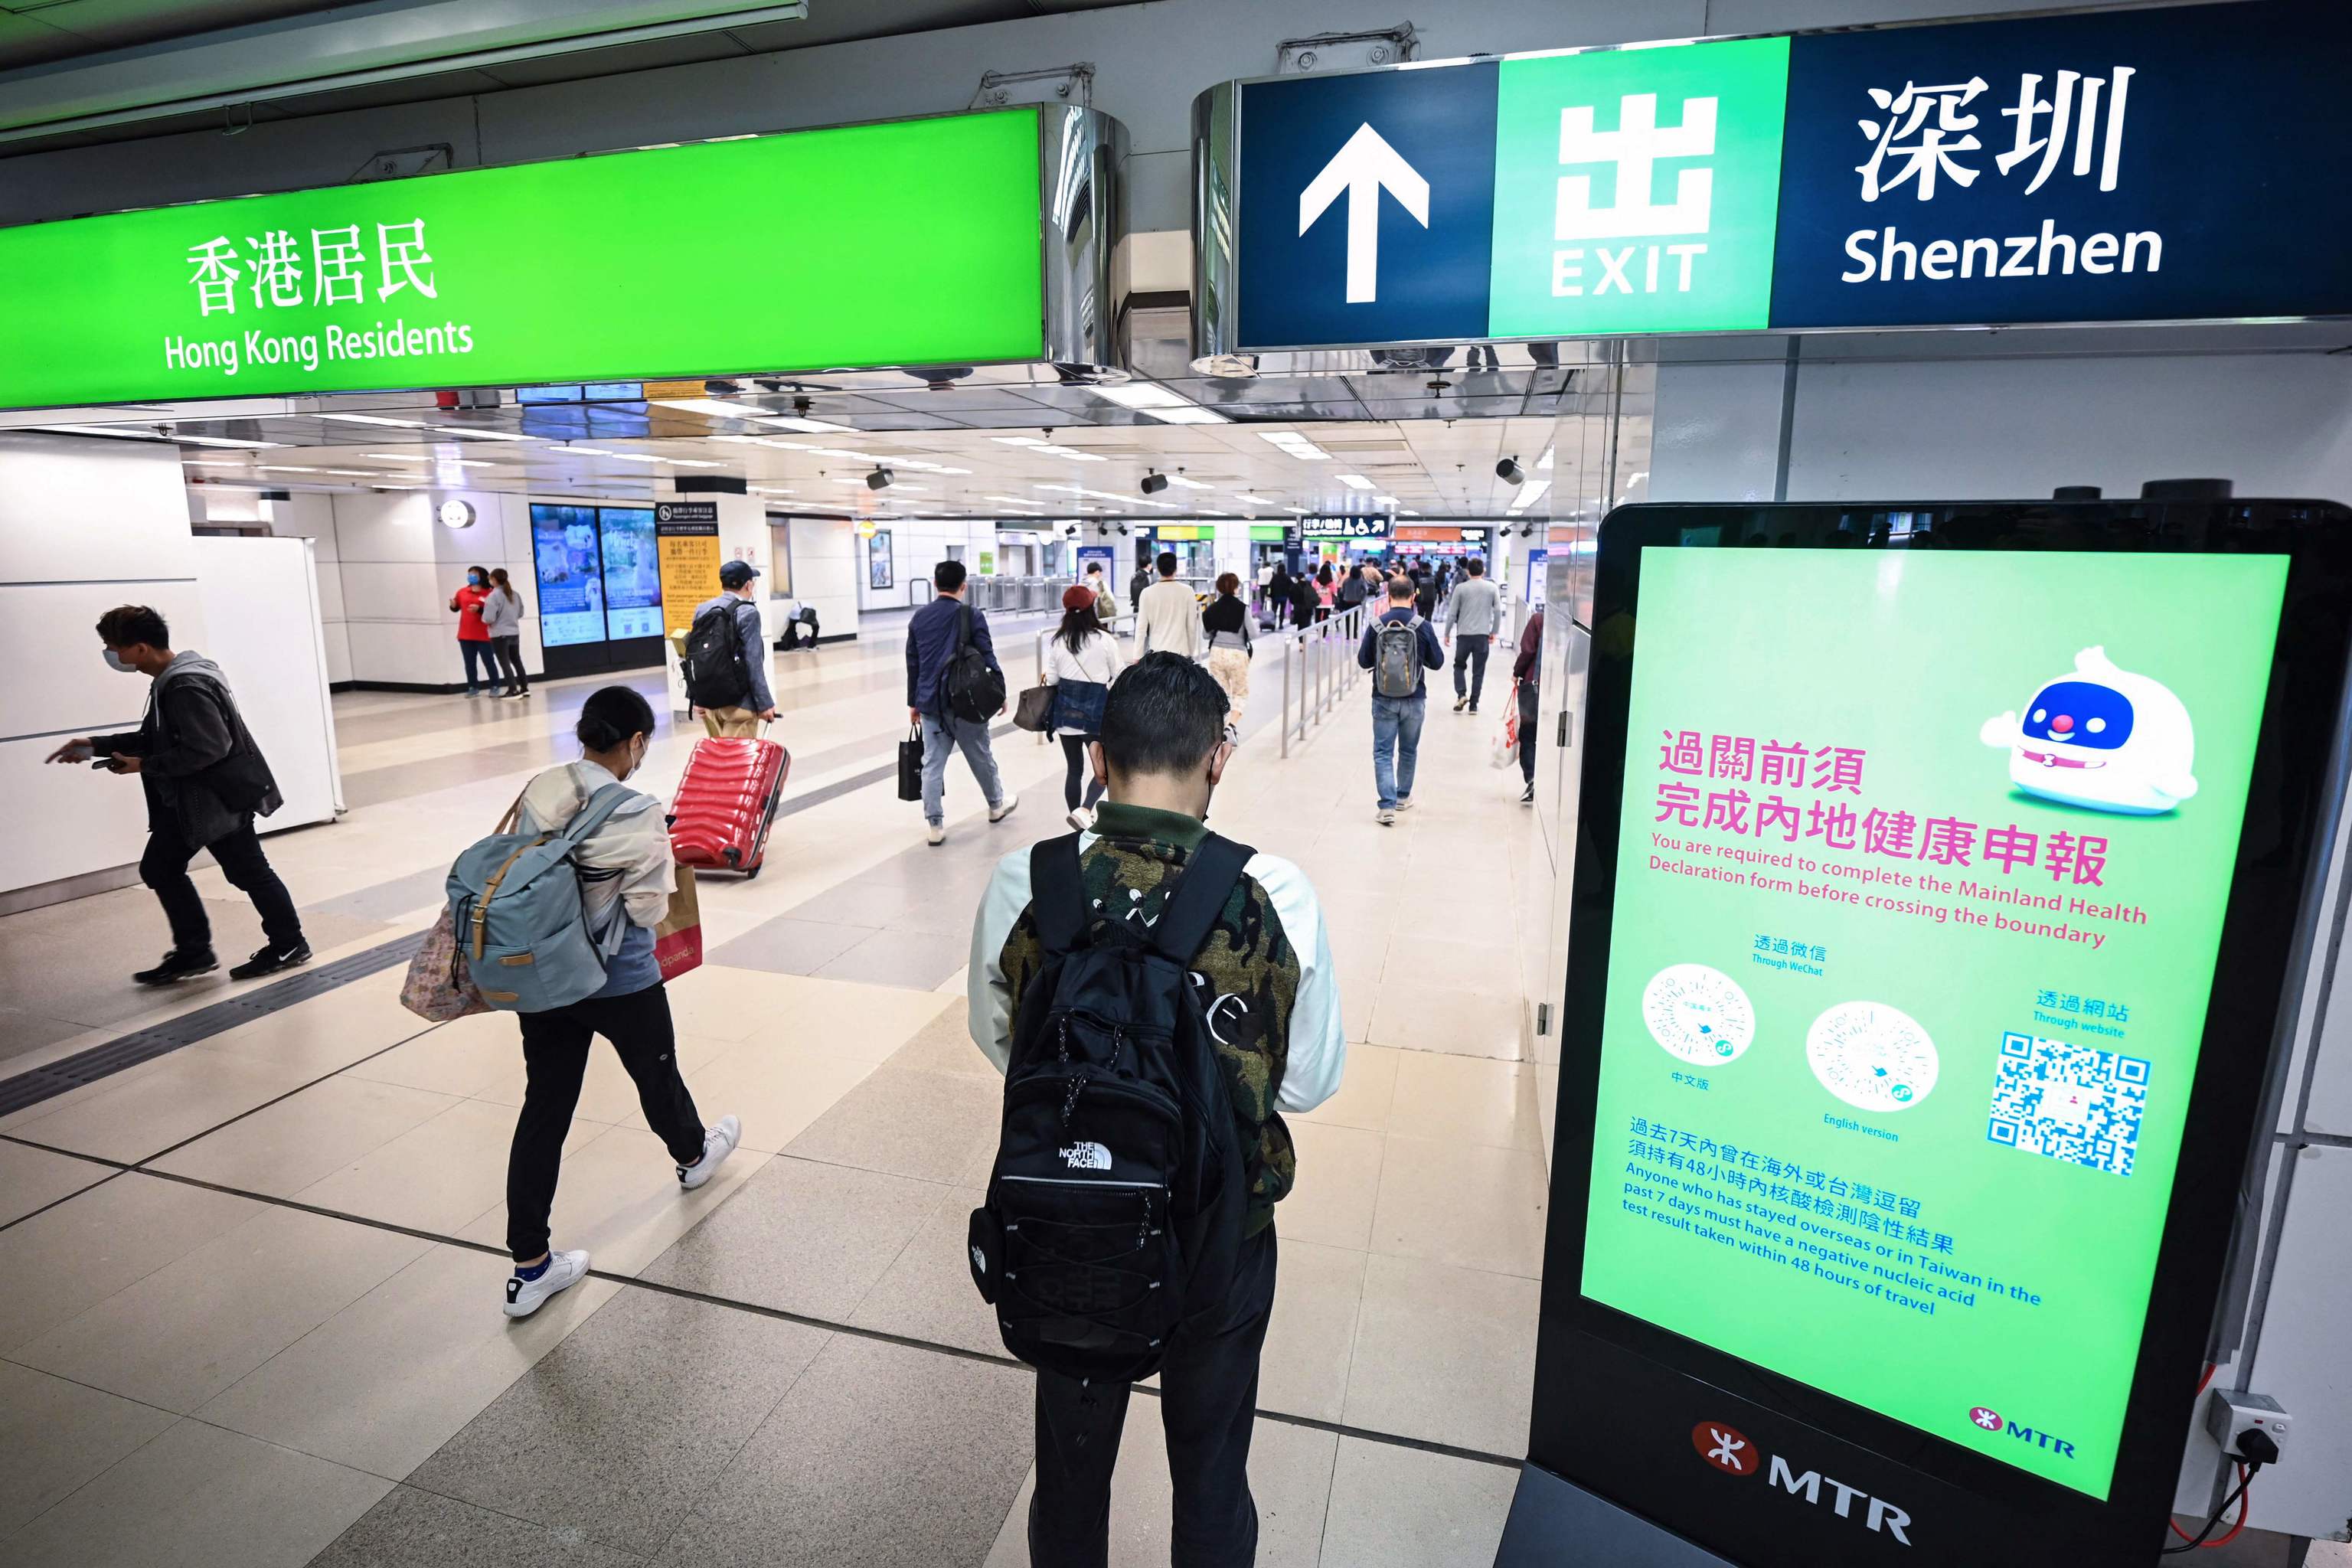 Hong Kong sorteará 500.000 billetes de avión gratis para reactivar el turismo tras la pandemia